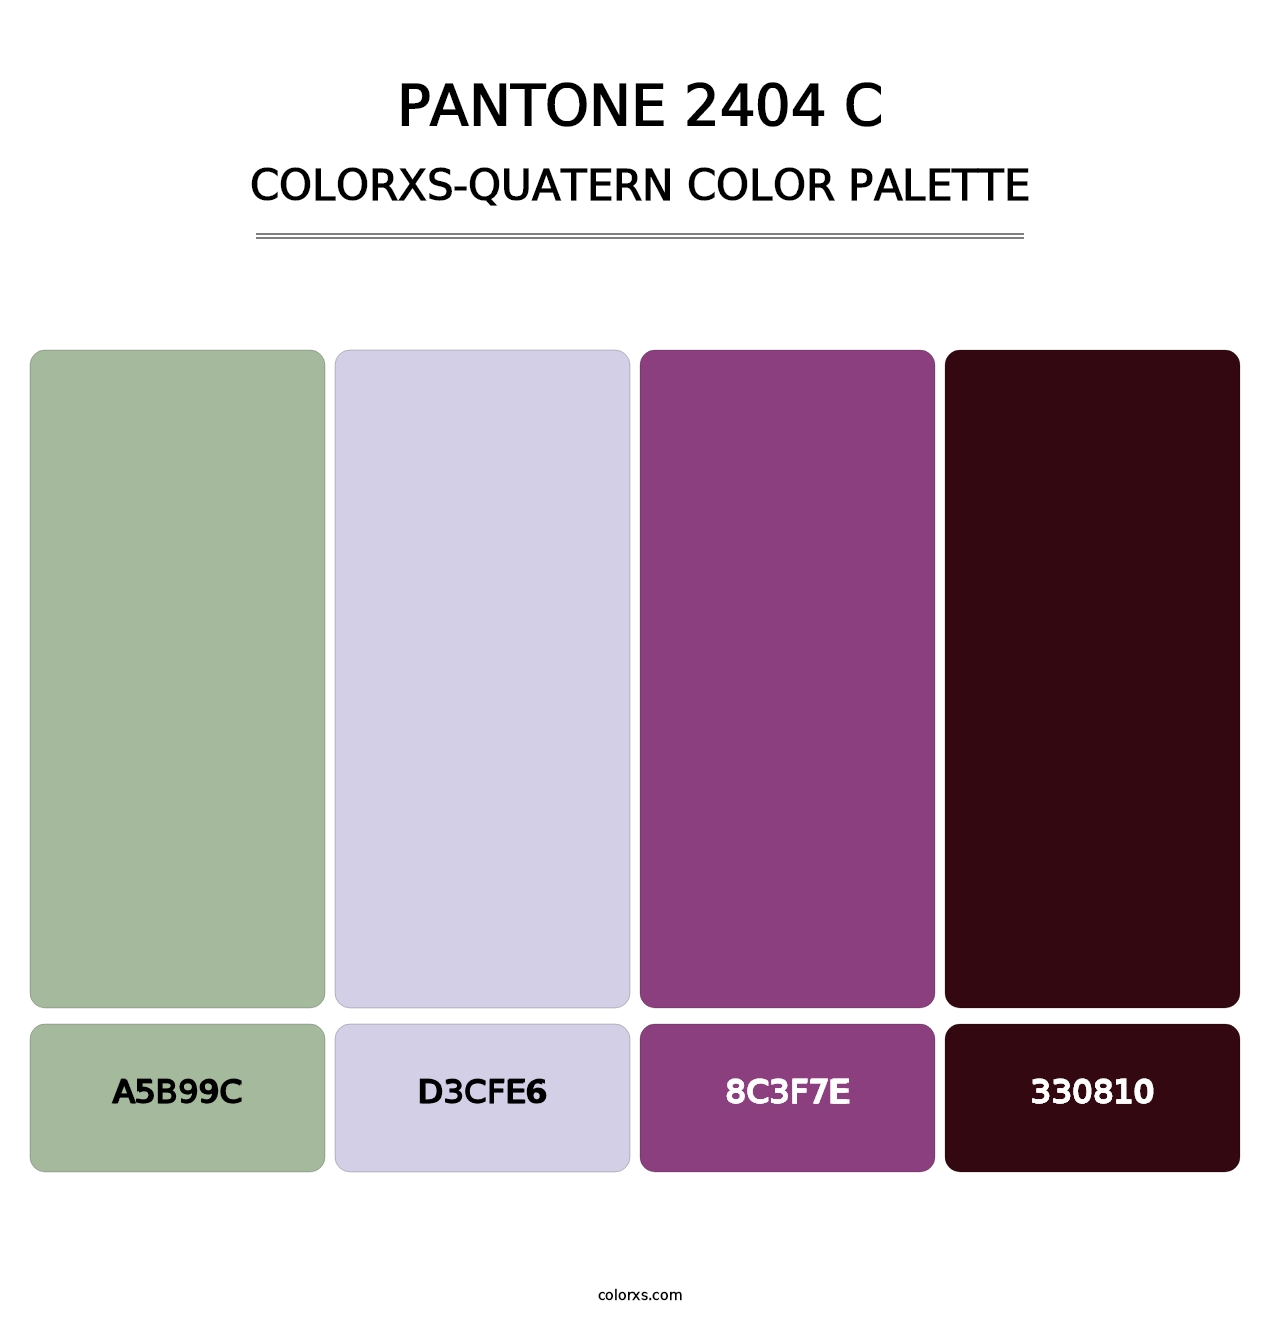 PANTONE 2404 C - Colorxs Quatern Palette